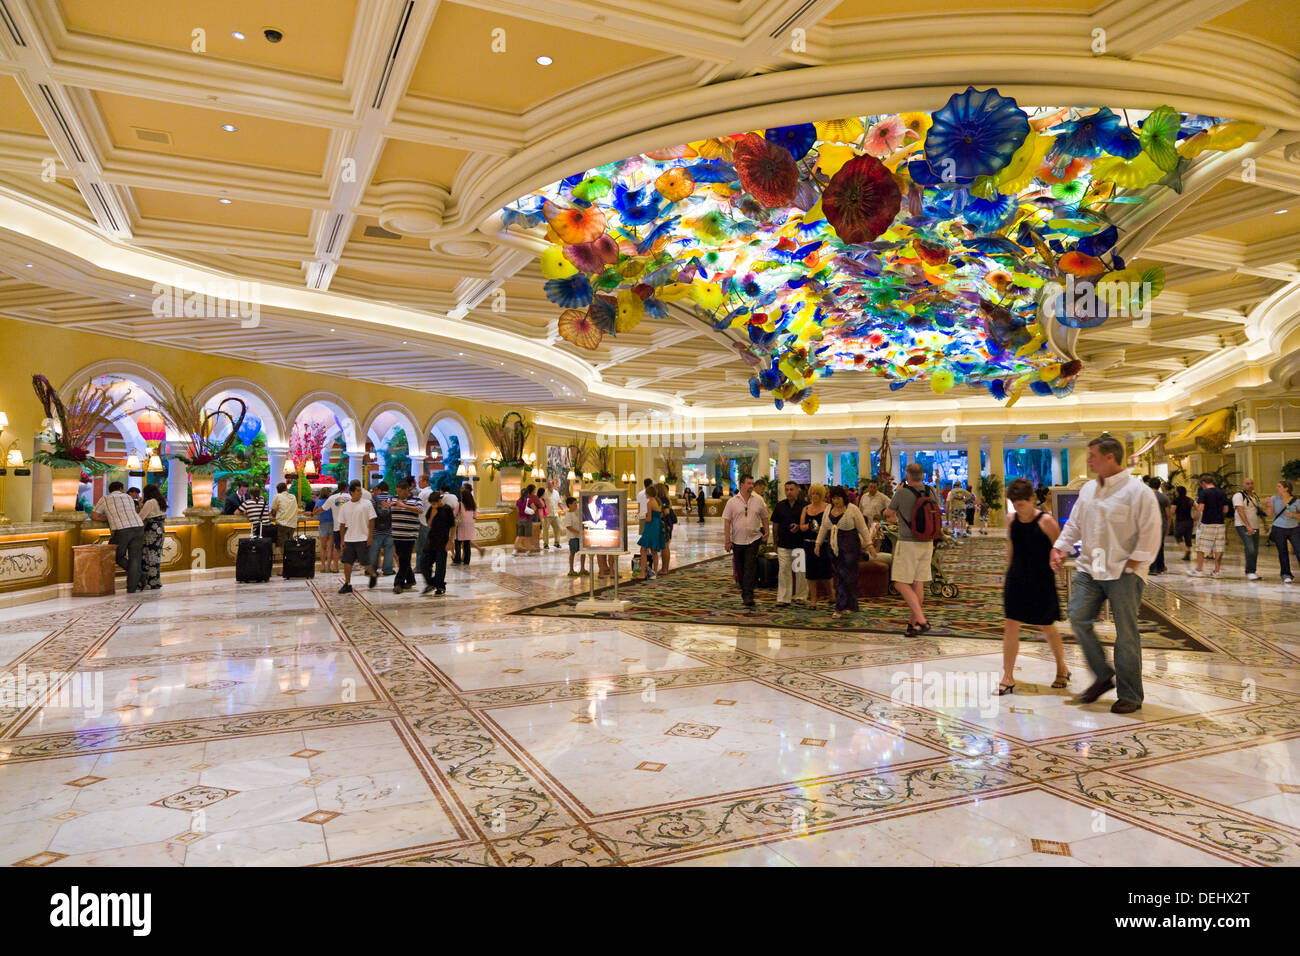 Dale Chihuly's 'Fiori di Como' Murano Glass ceiling in The Bellagio resort and casino lobby, Las Vegas, Nevada, USA. JMH5468 Stock Photo